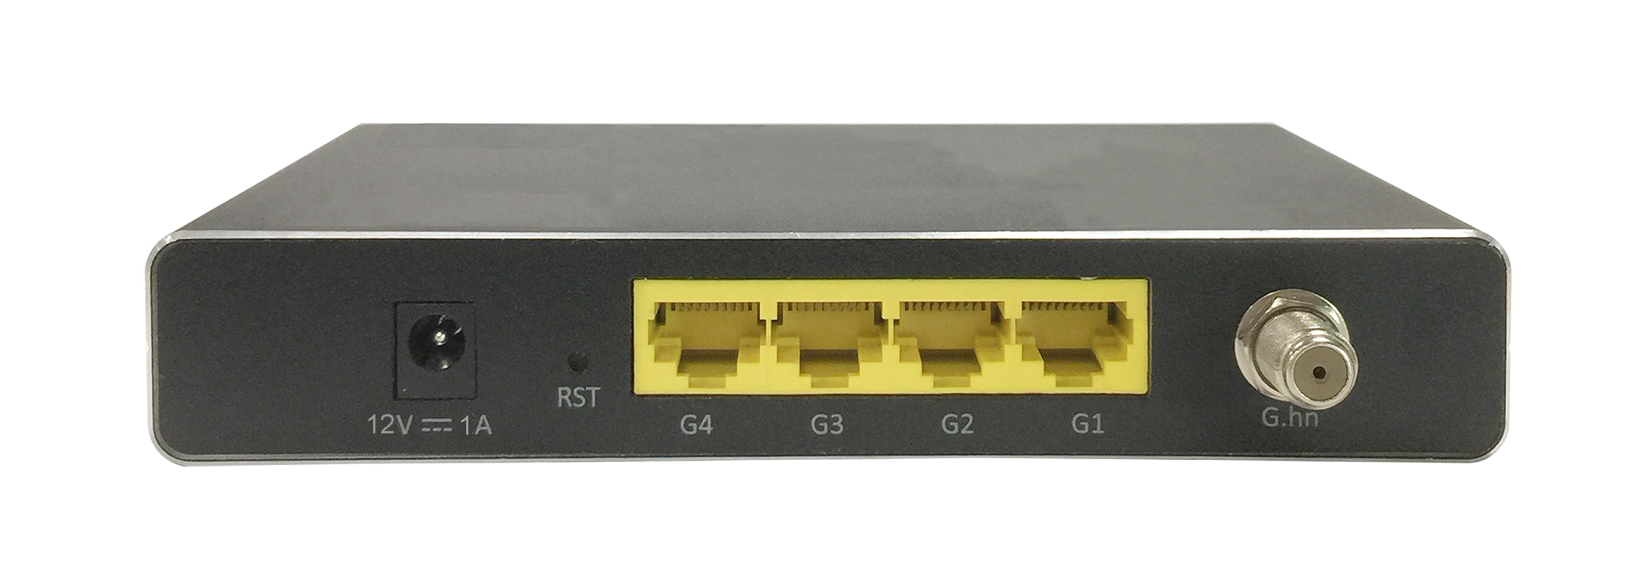 Netzwerk über Koax Kabel - Modem mit 4 Ethernet Anschlussen